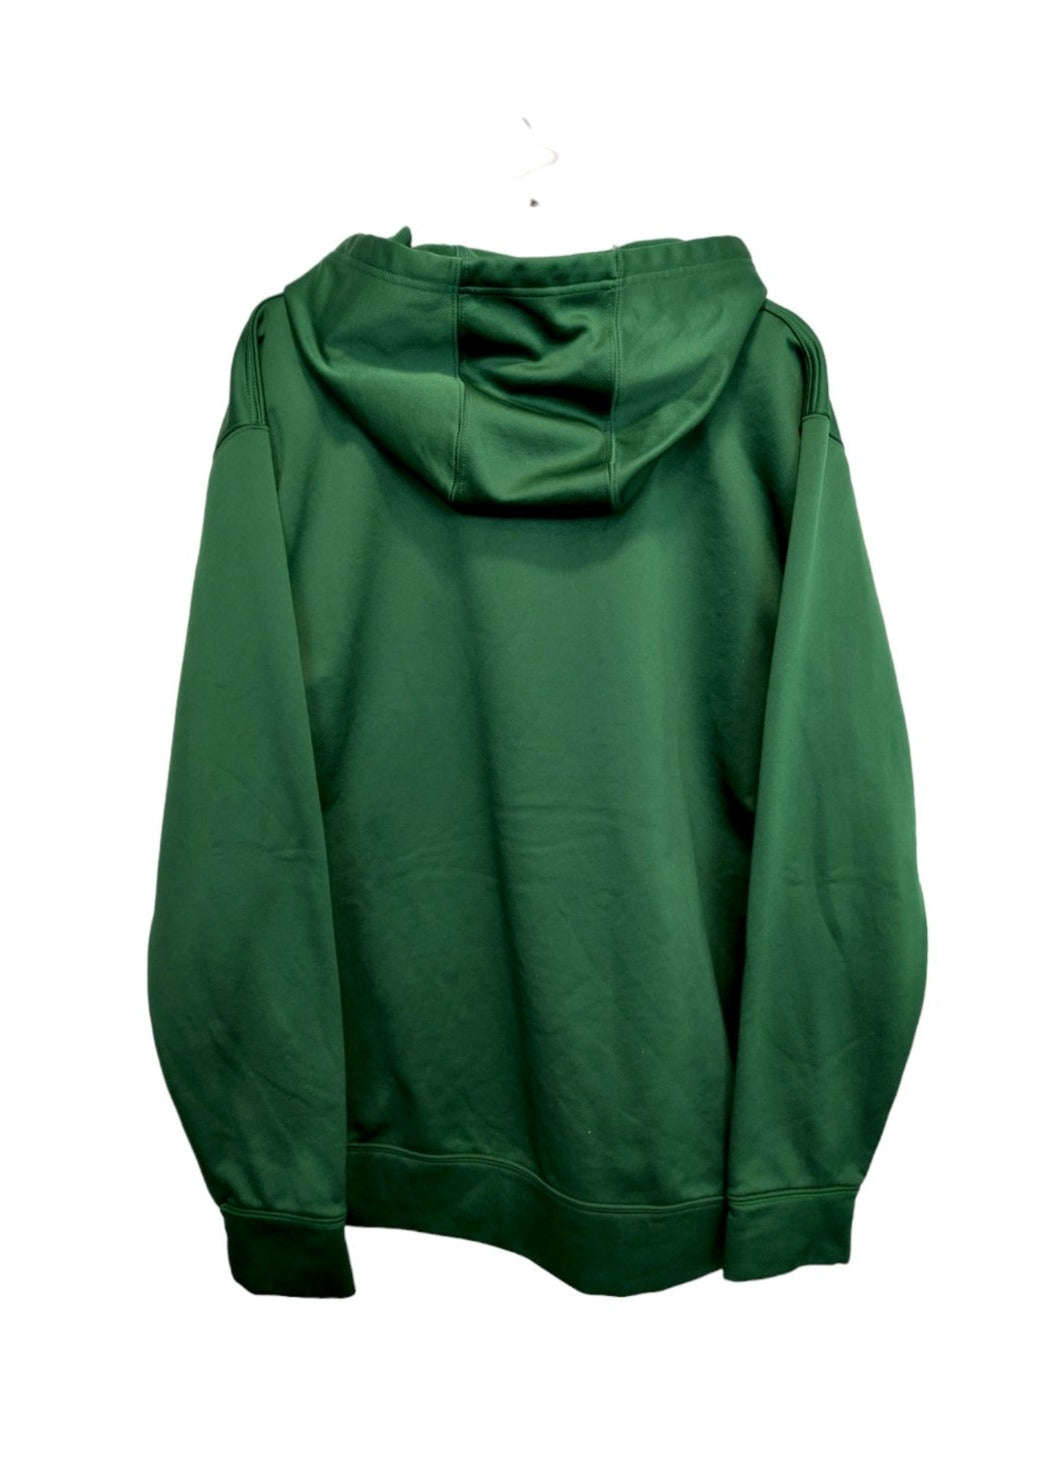 Top Branded, Ανδρική Φούτερ Μπλούζα σε Πράσινο Χρώμα (XL)